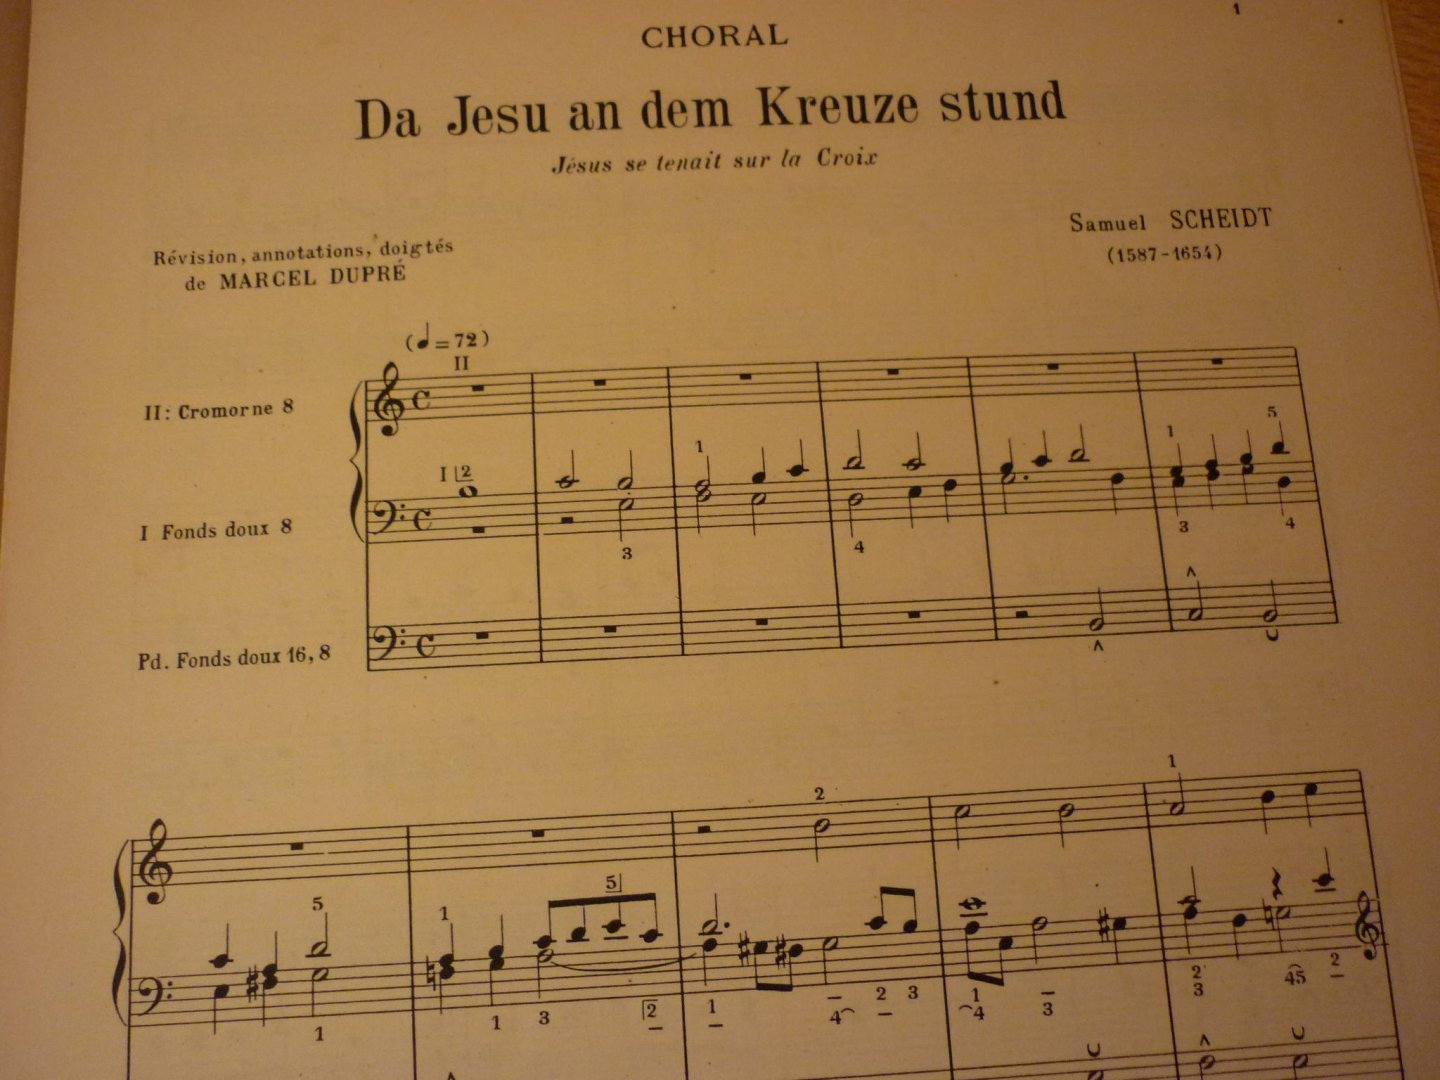 Dupré; Marcel - Anthologie des Maitres Classiques de l'Orgue; Samuel Scheidt: Choral: Da Jesu an dem Kreuze Stund